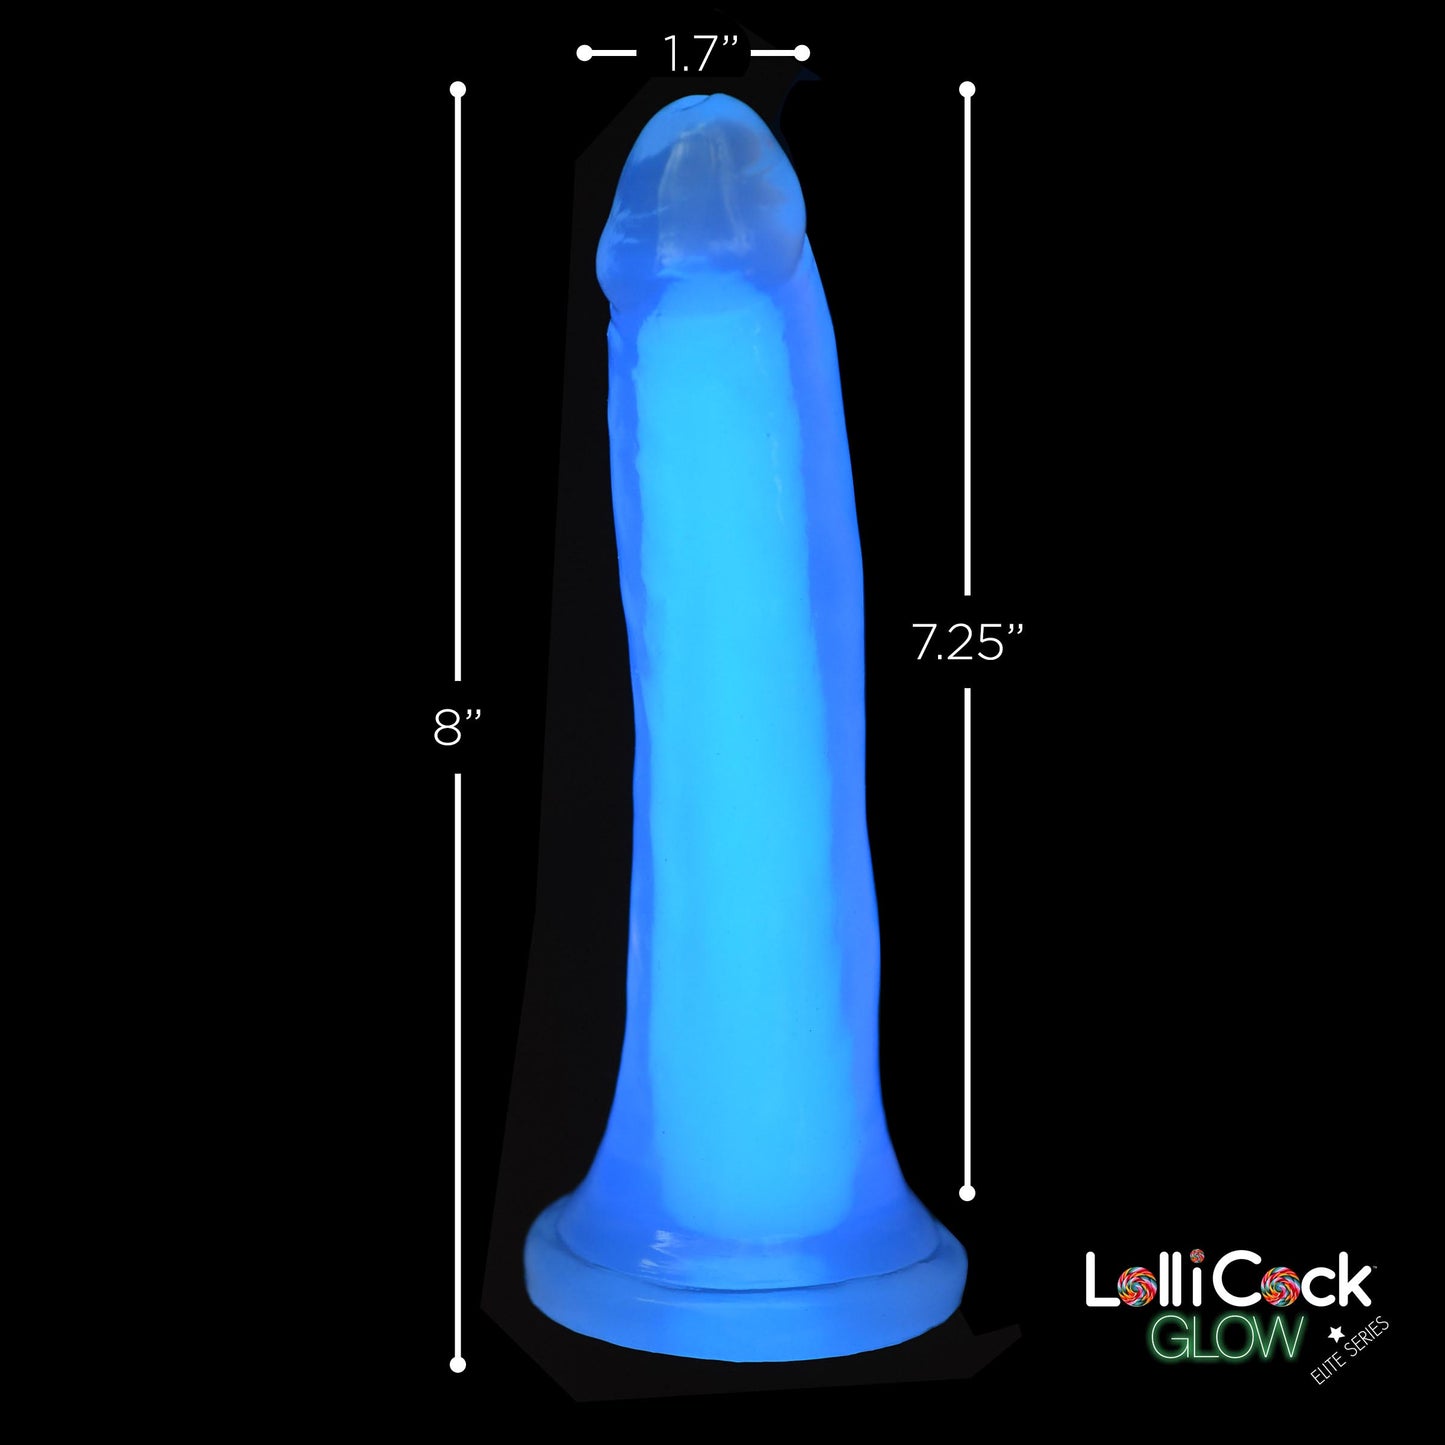 7 Inch Glow-in-the-Dark Silicone Dildo - Blue